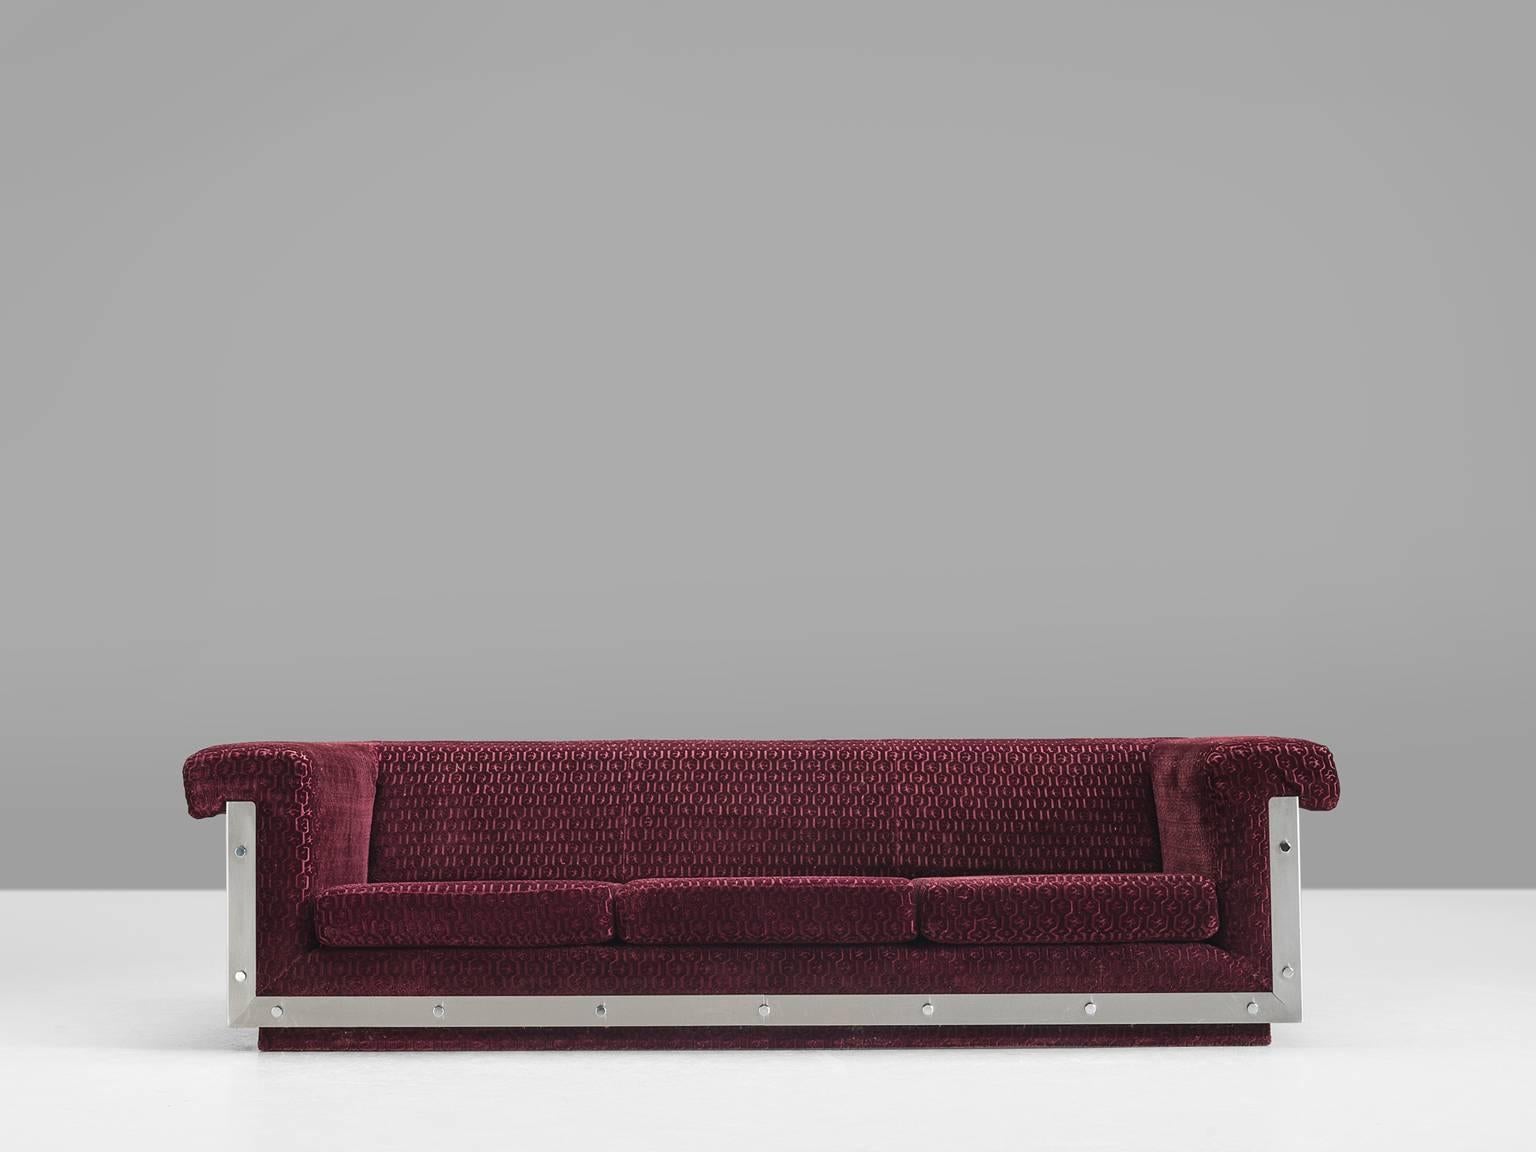 French Sofa in Stainless Steel and Burgundy Velvet Upholstery 1